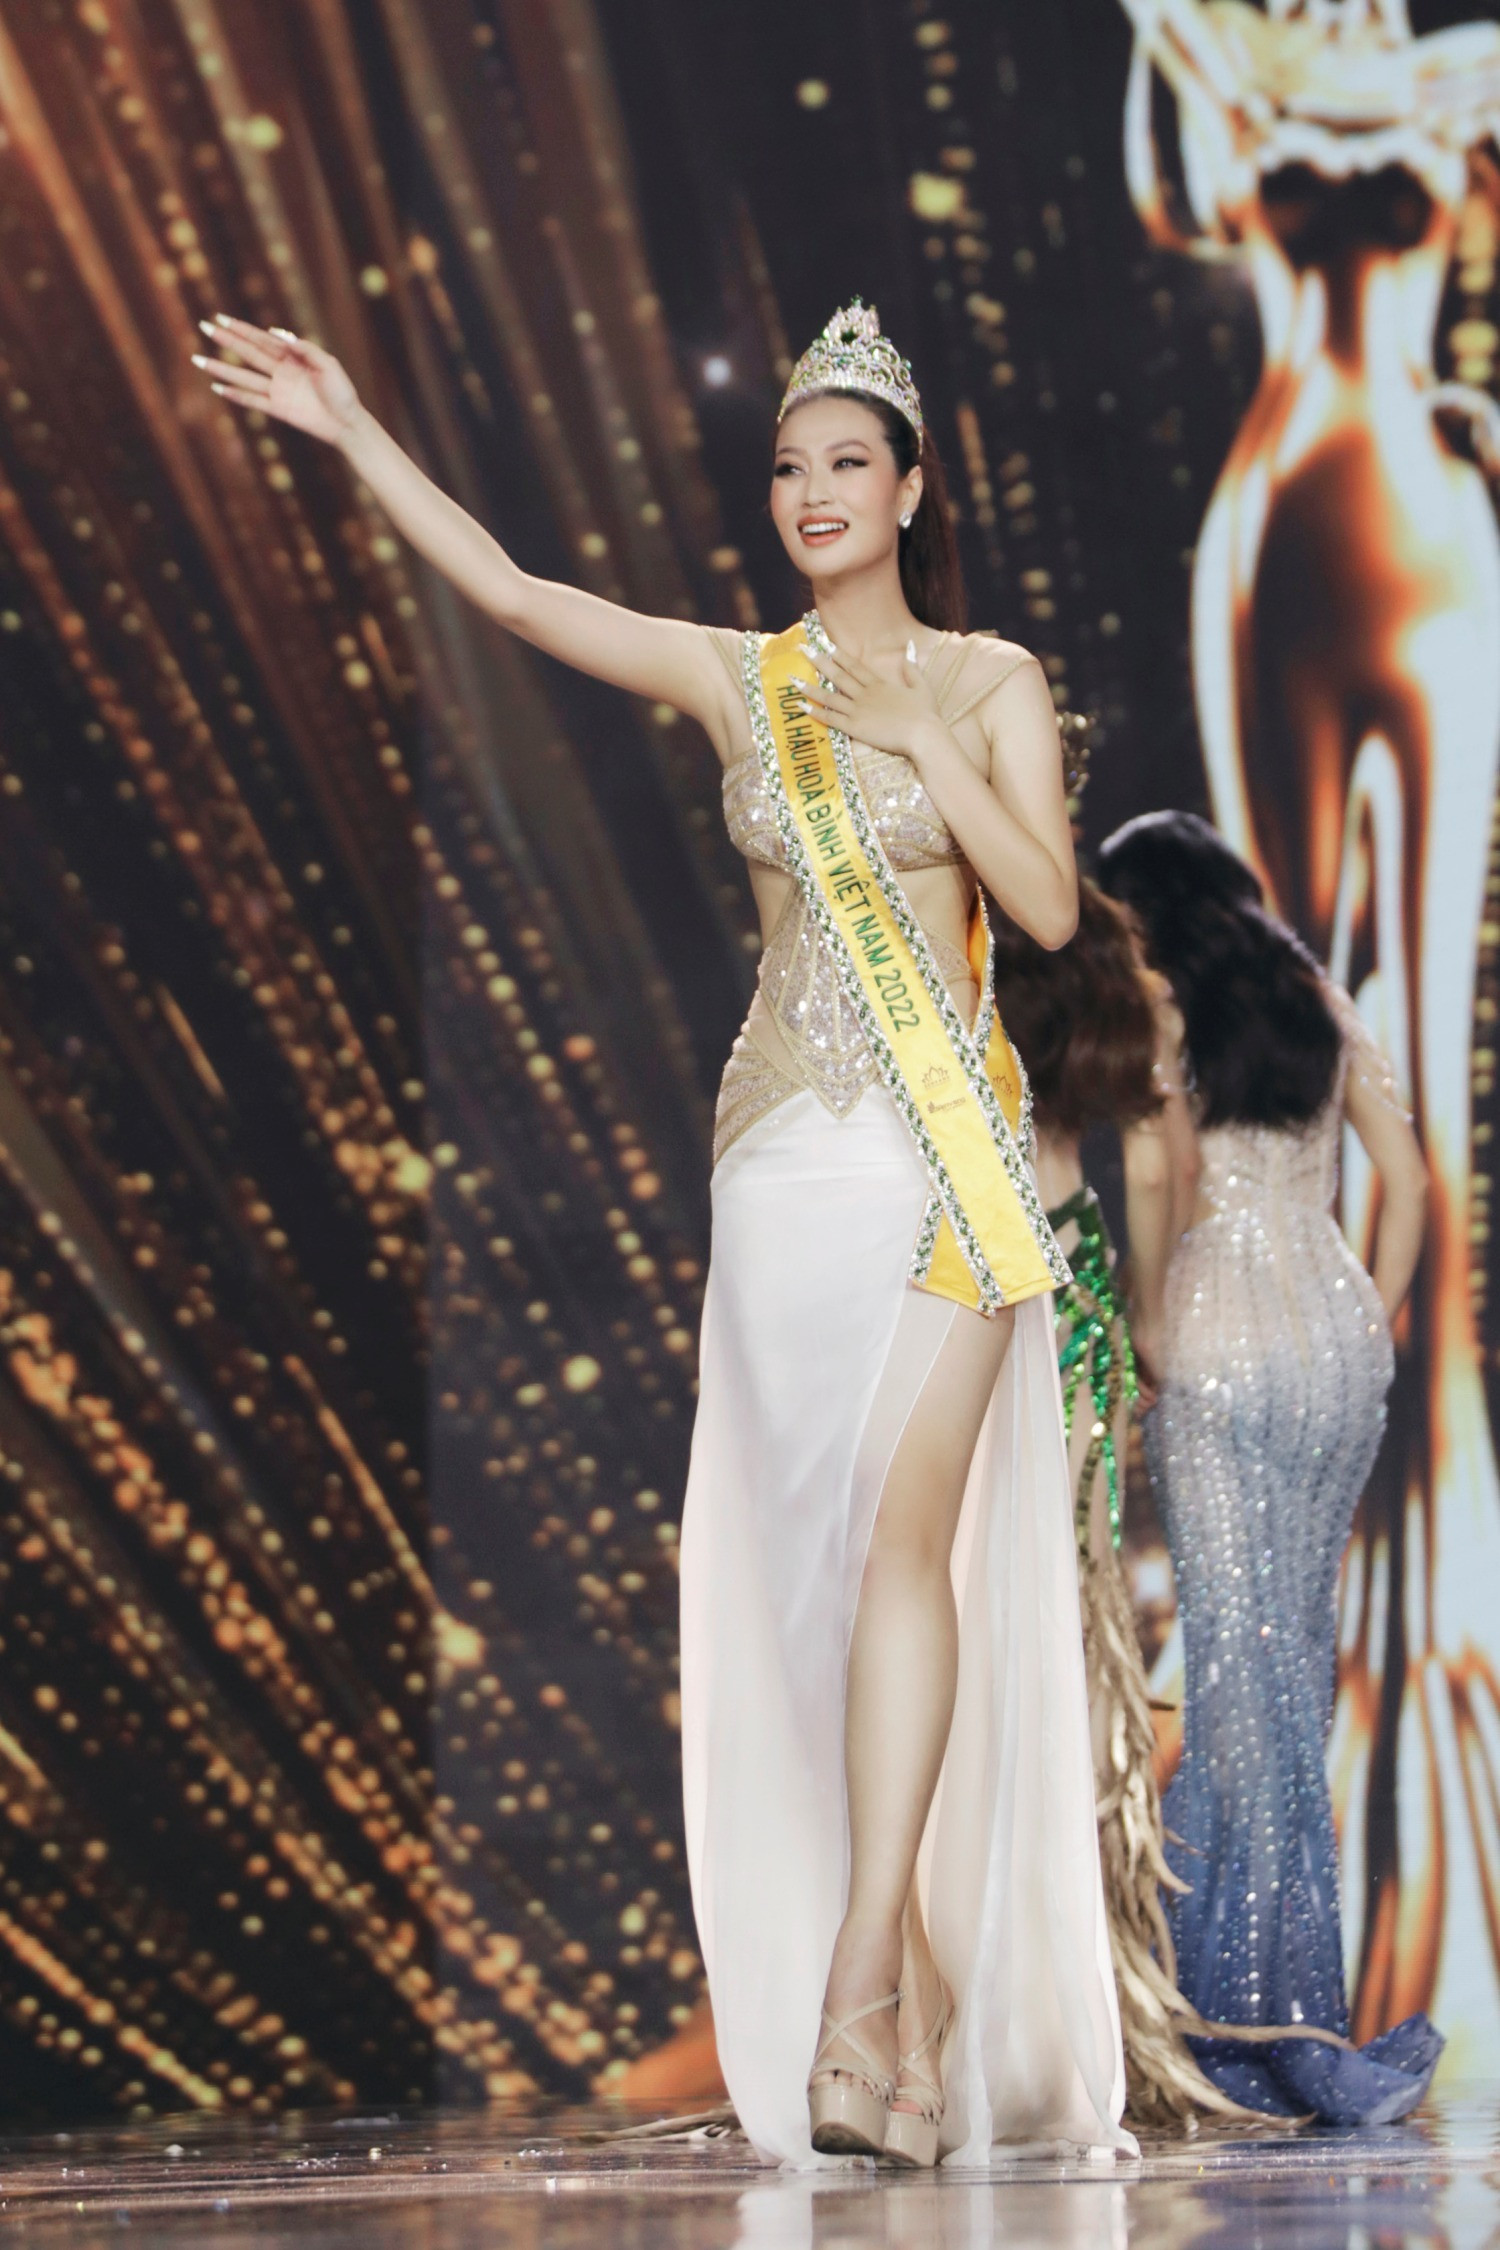 Hoa hậu Hòa bình Việt Nam 2022 Đoàn Thiên Ân từng bị miệt thị vì nặng 75kg - 1